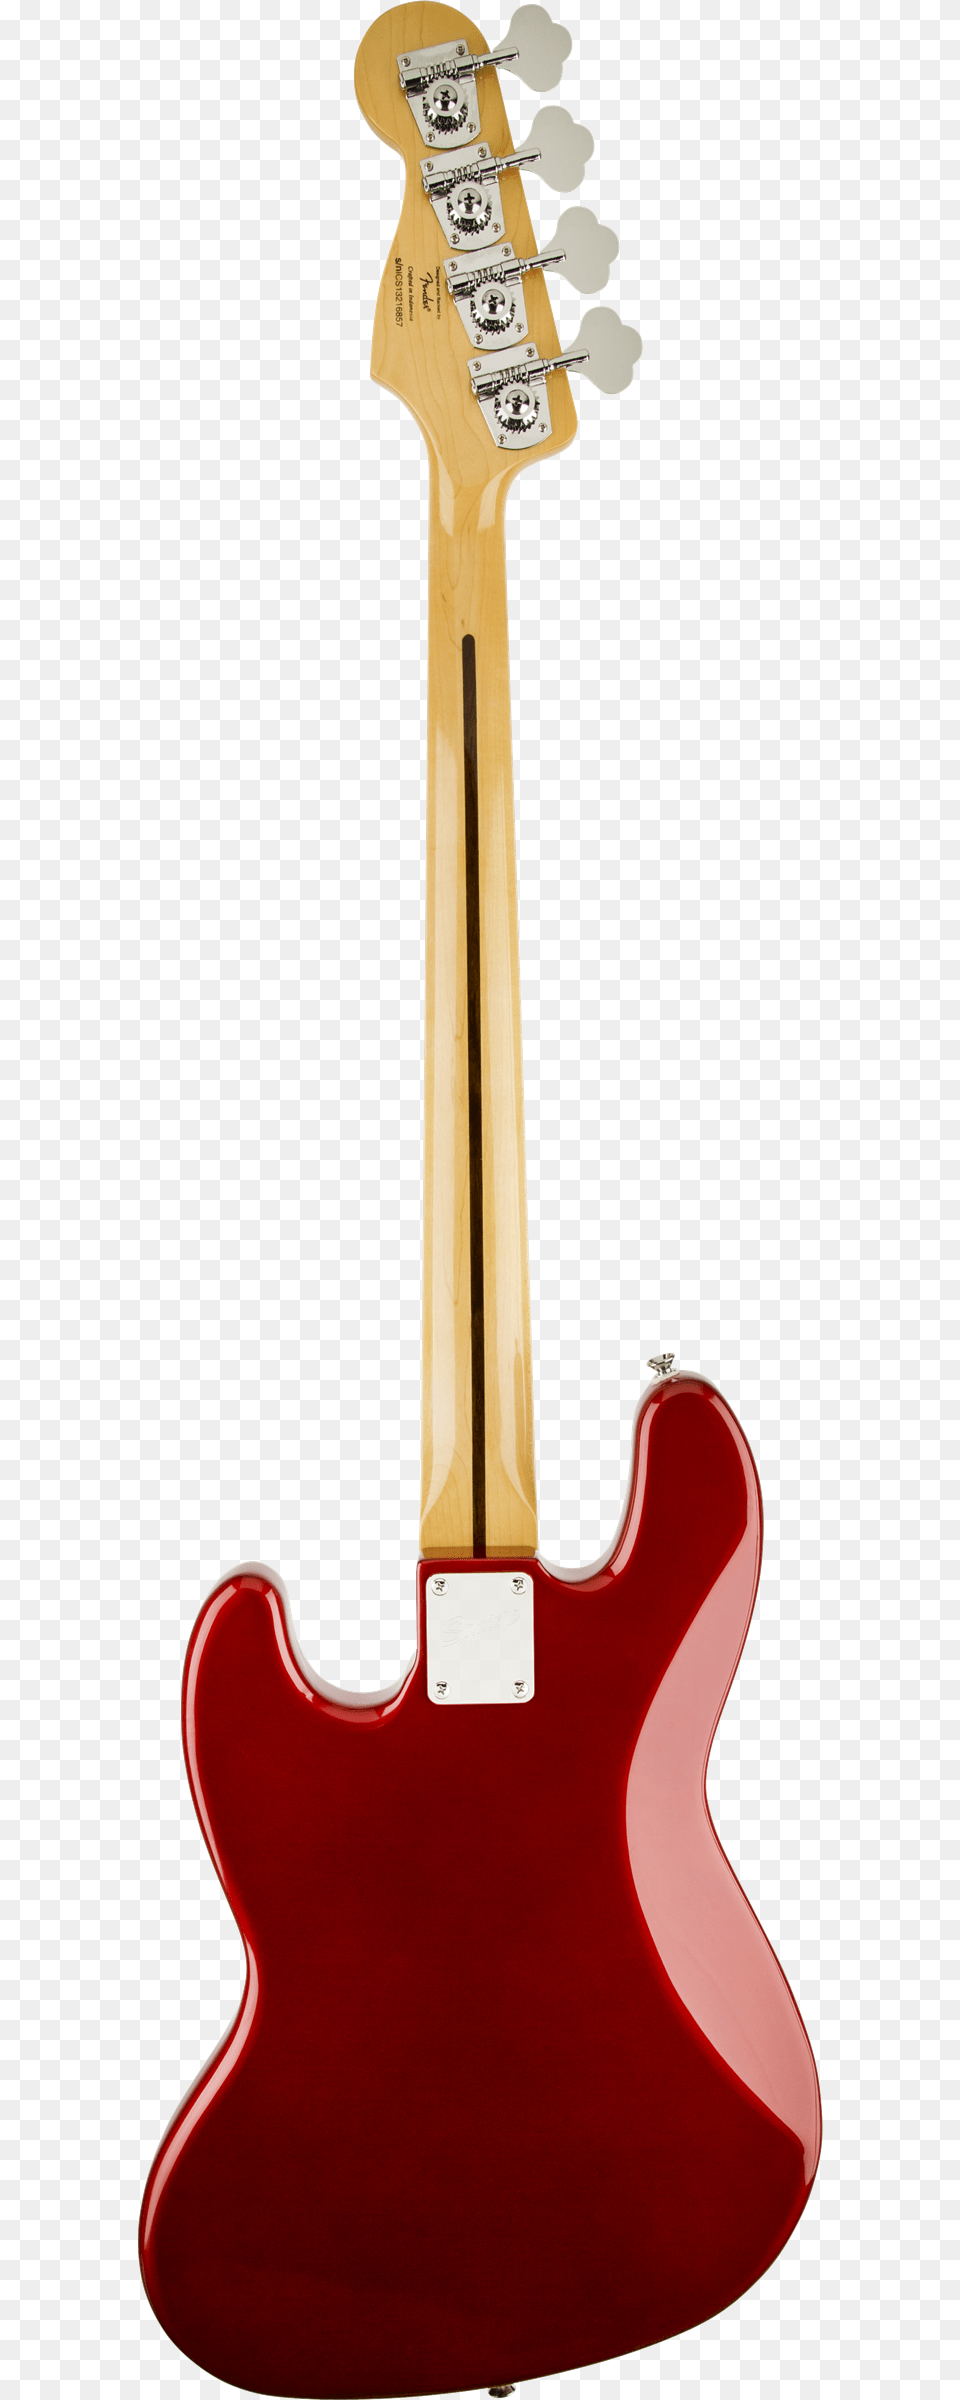 Fender Std Jaguar Bass Rw Blk, Bass Guitar, Guitar, Musical Instrument Png